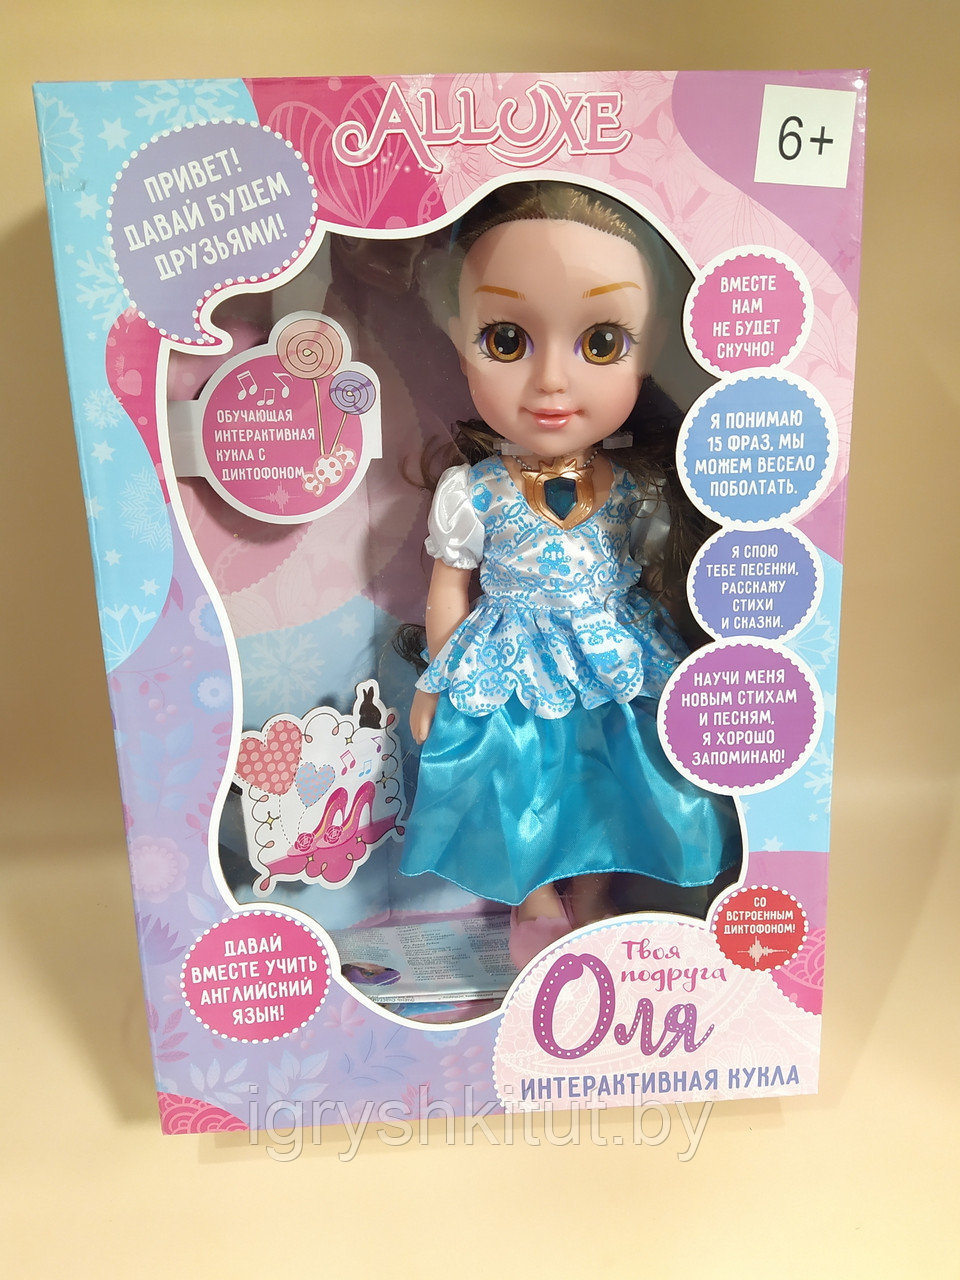 Интерактивная кукла "Оля", ведёт диалог, обучает английскому